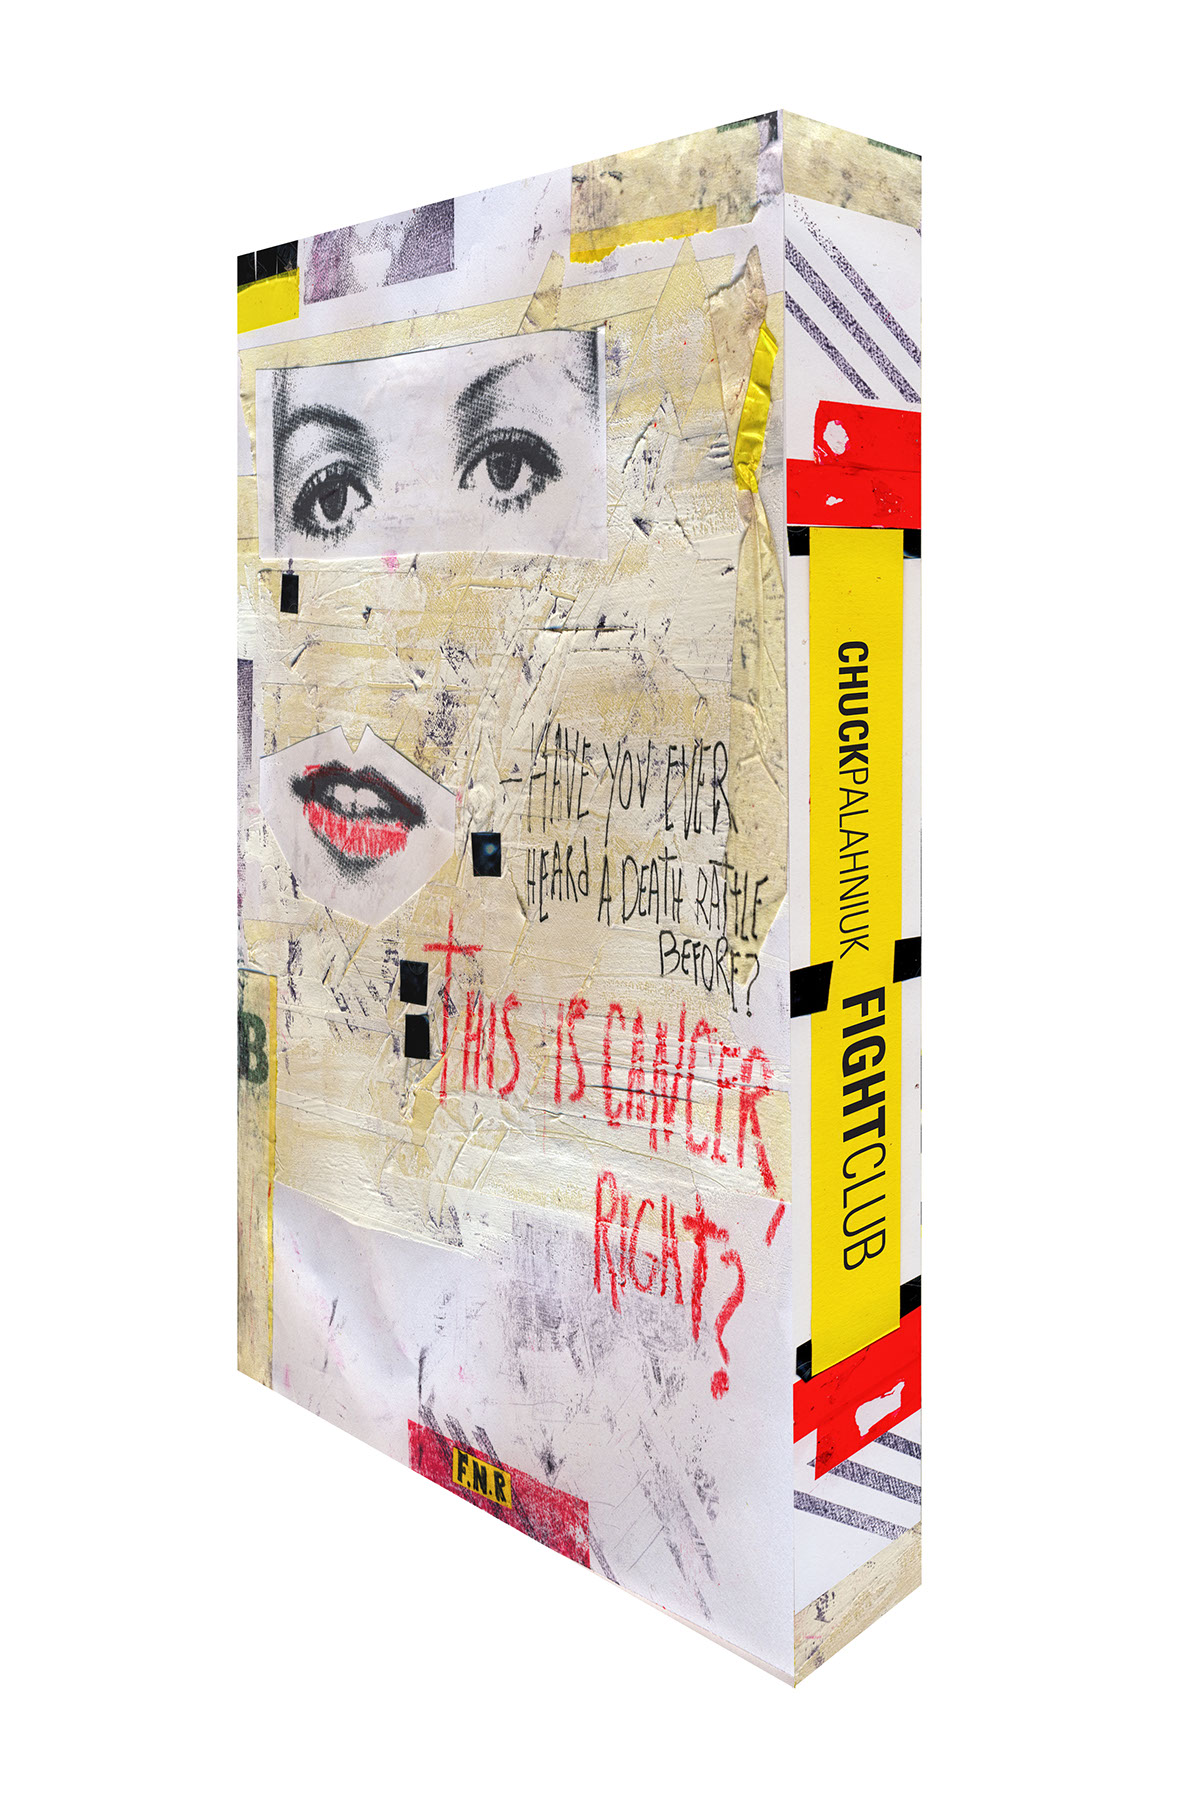 Book Cover Design book capa de livro Livro clube da luta fight club palahniuk collage